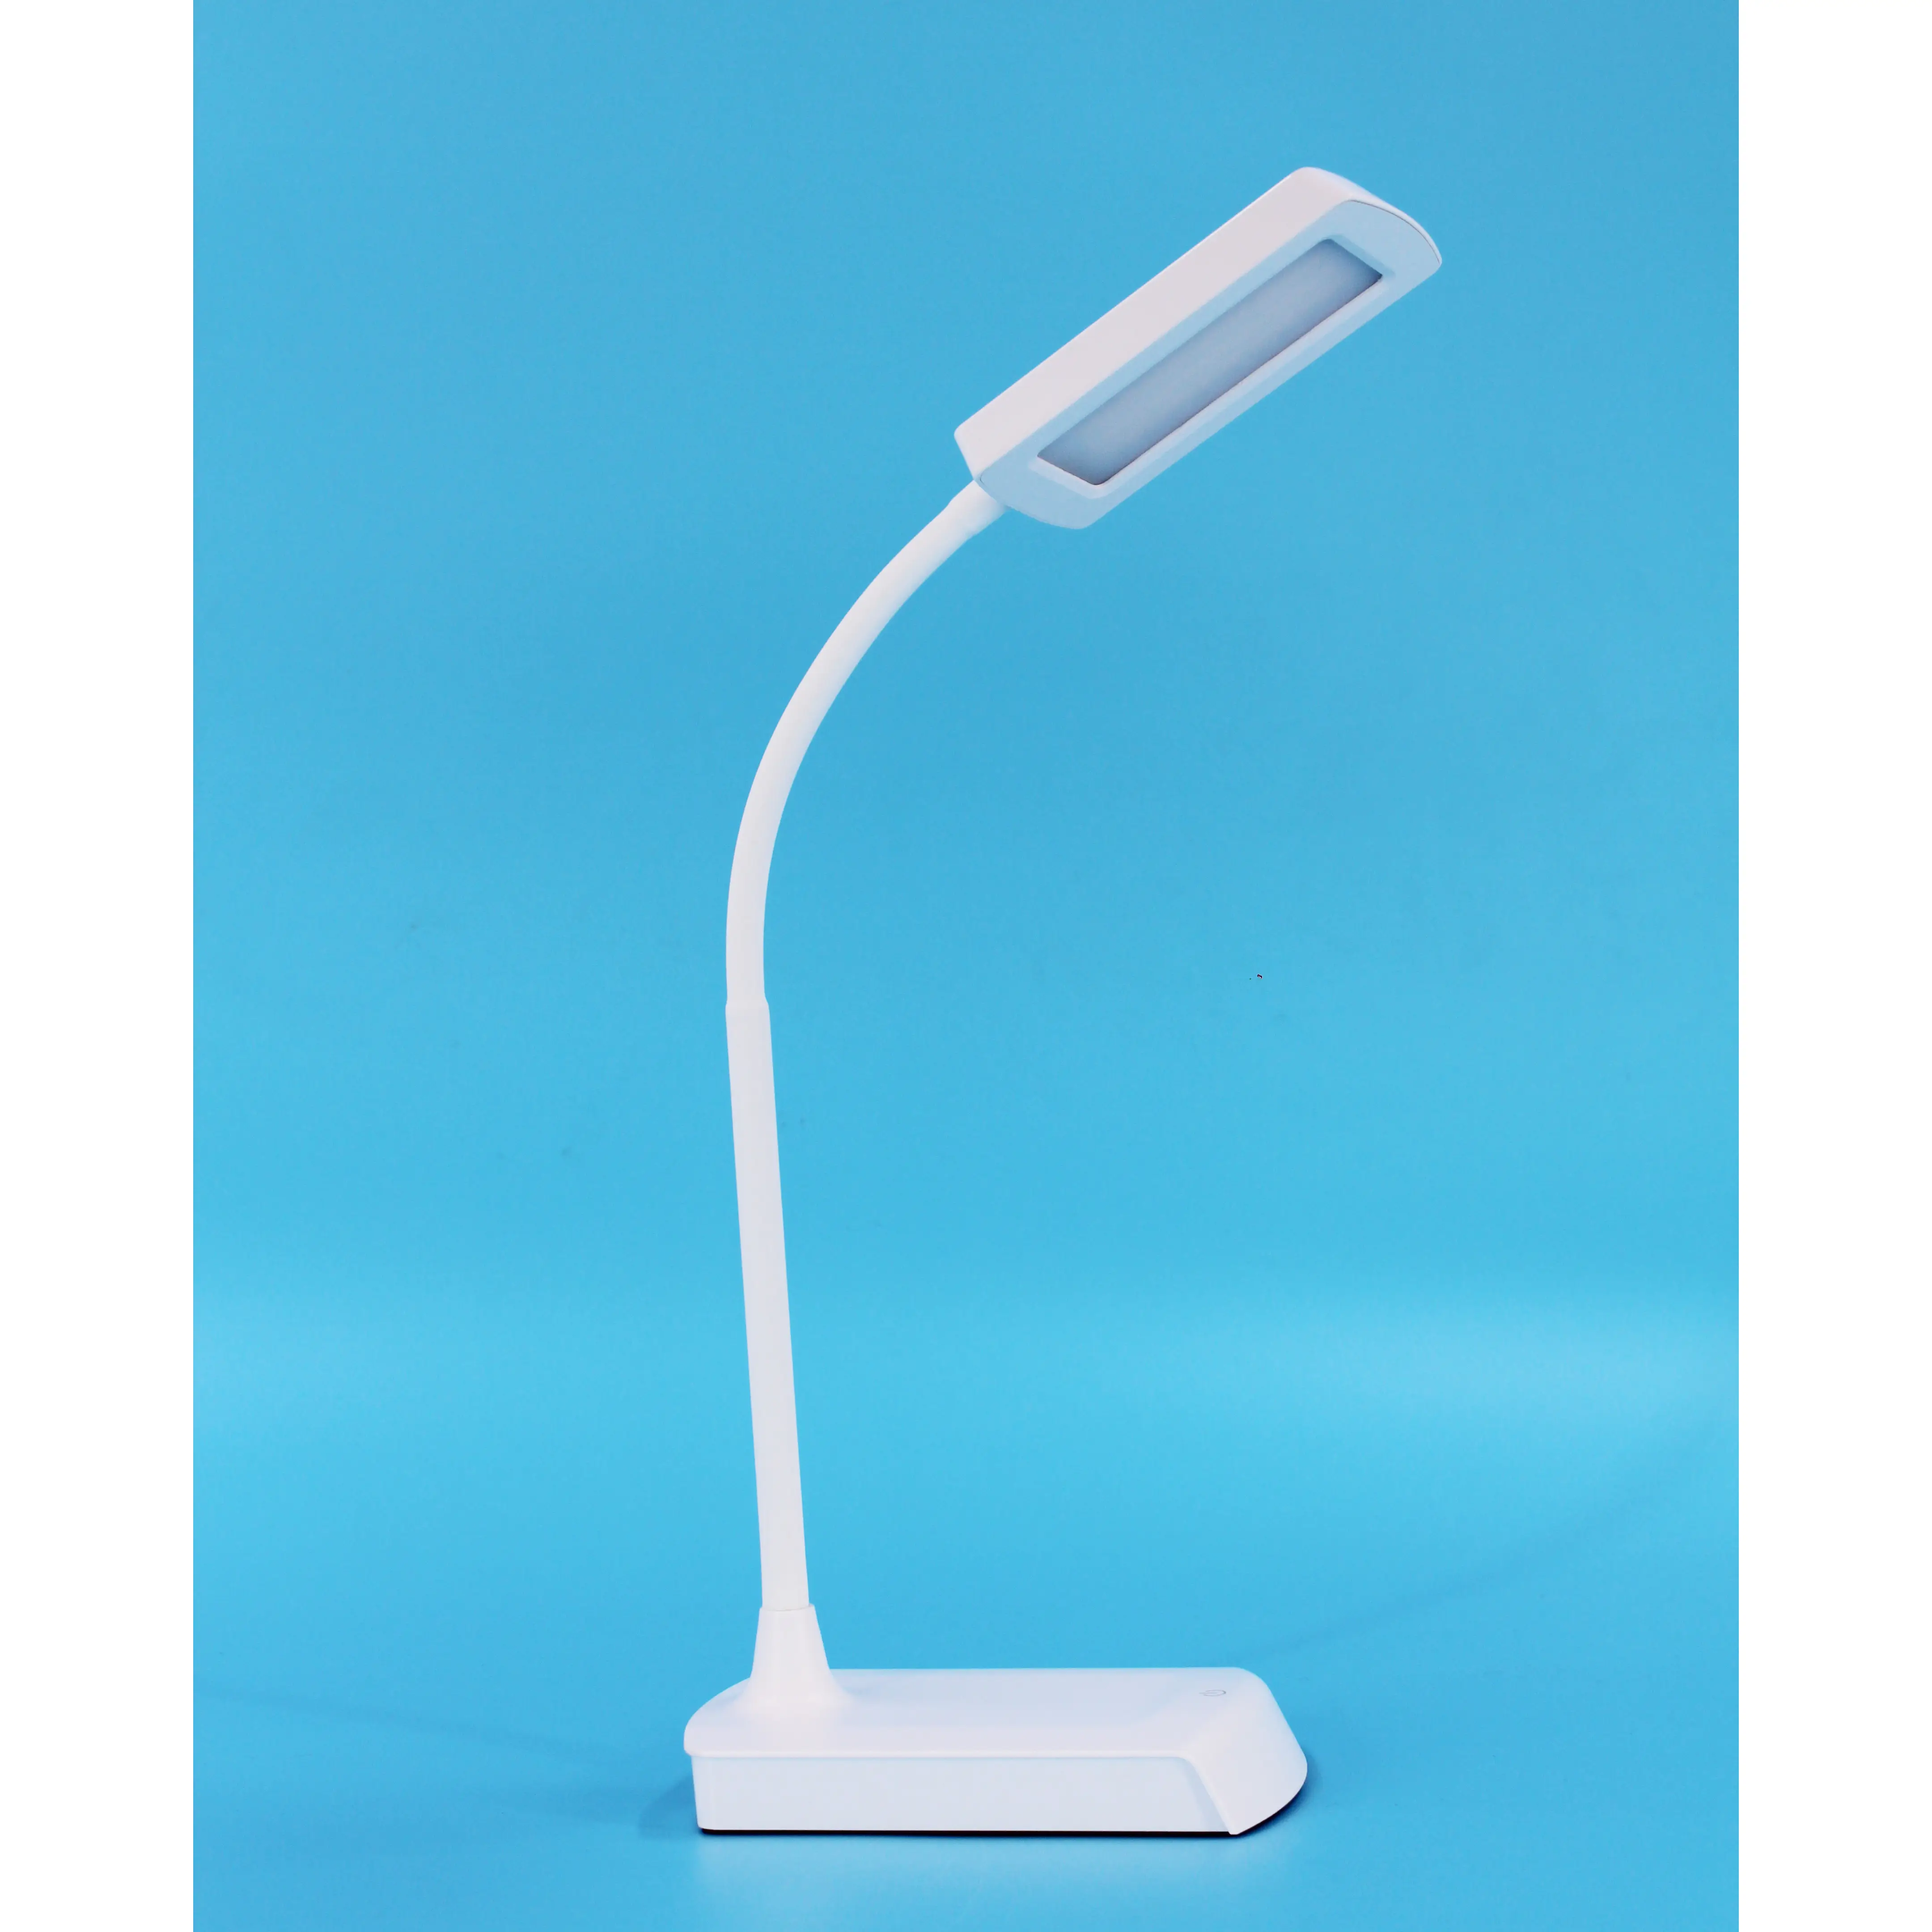 New Design Modern Children USB Rechargeable LED Desk Lamp Study Reading Light Table Lamp For Student